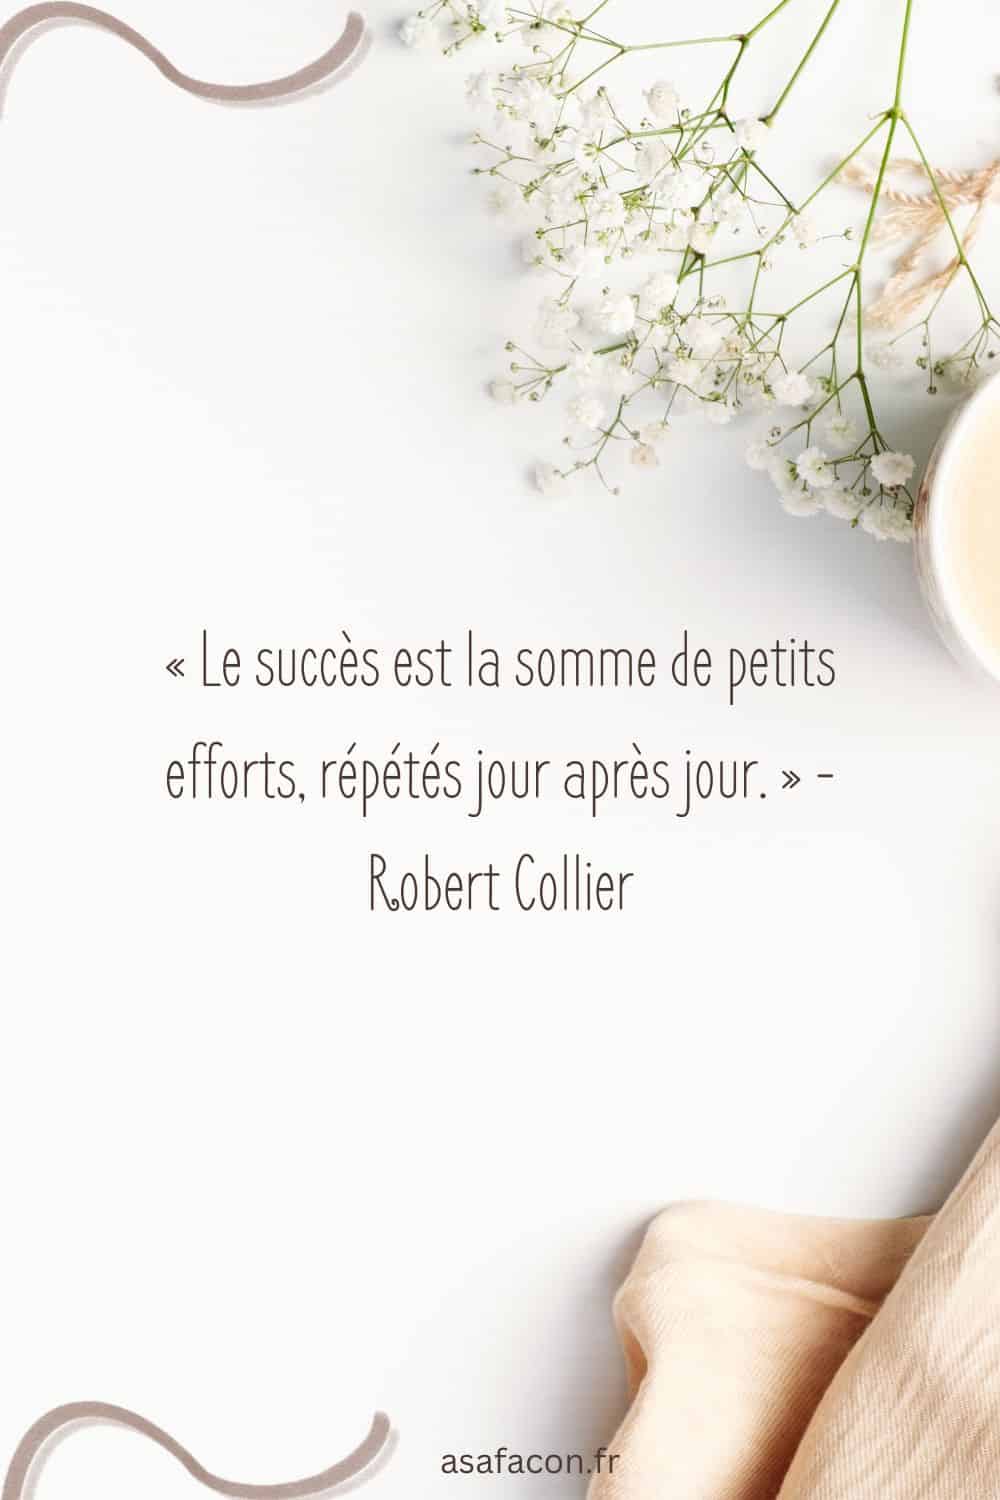 « Le succès est la somme de petits efforts, répétés jour après jour. » - Robert Collier